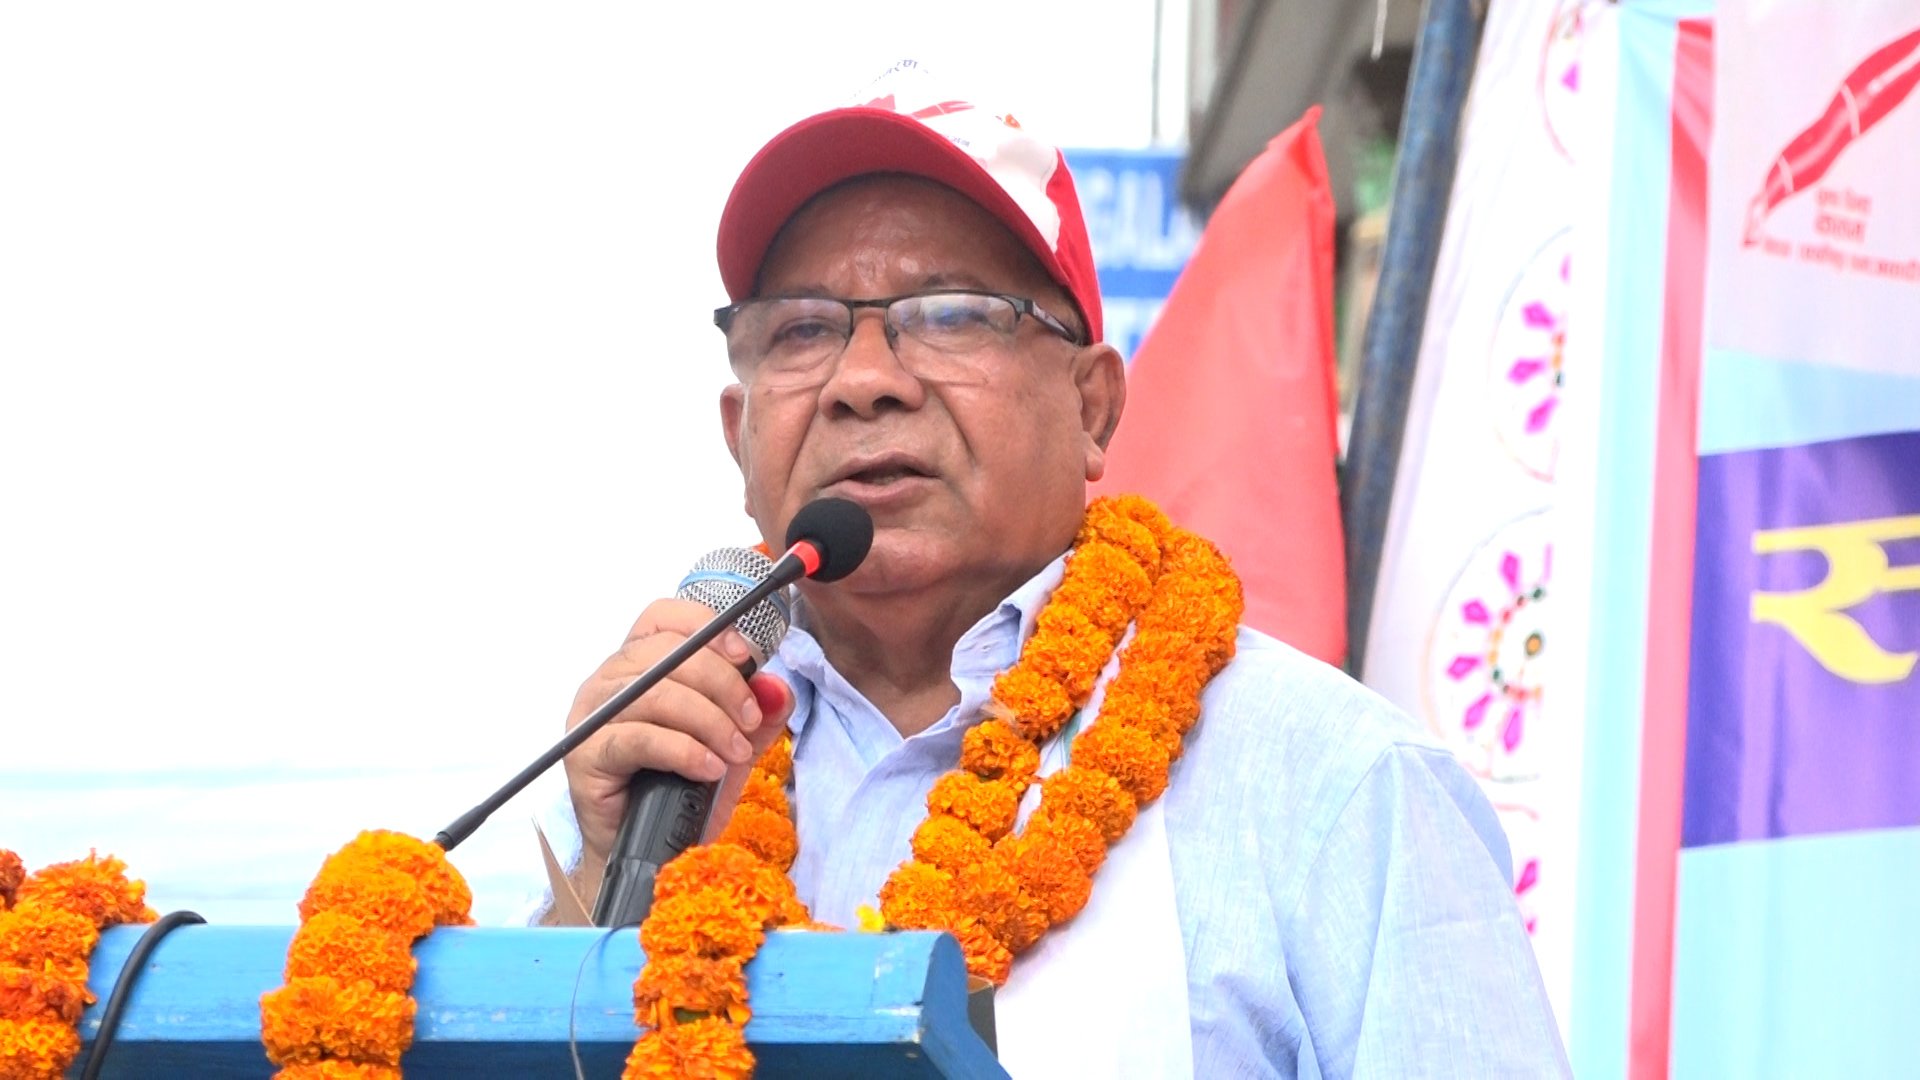 समाजवादी पार्टीप्रति जनताको भरोसा बढ्दै गएको छ : अध्यक्ष नेपाल